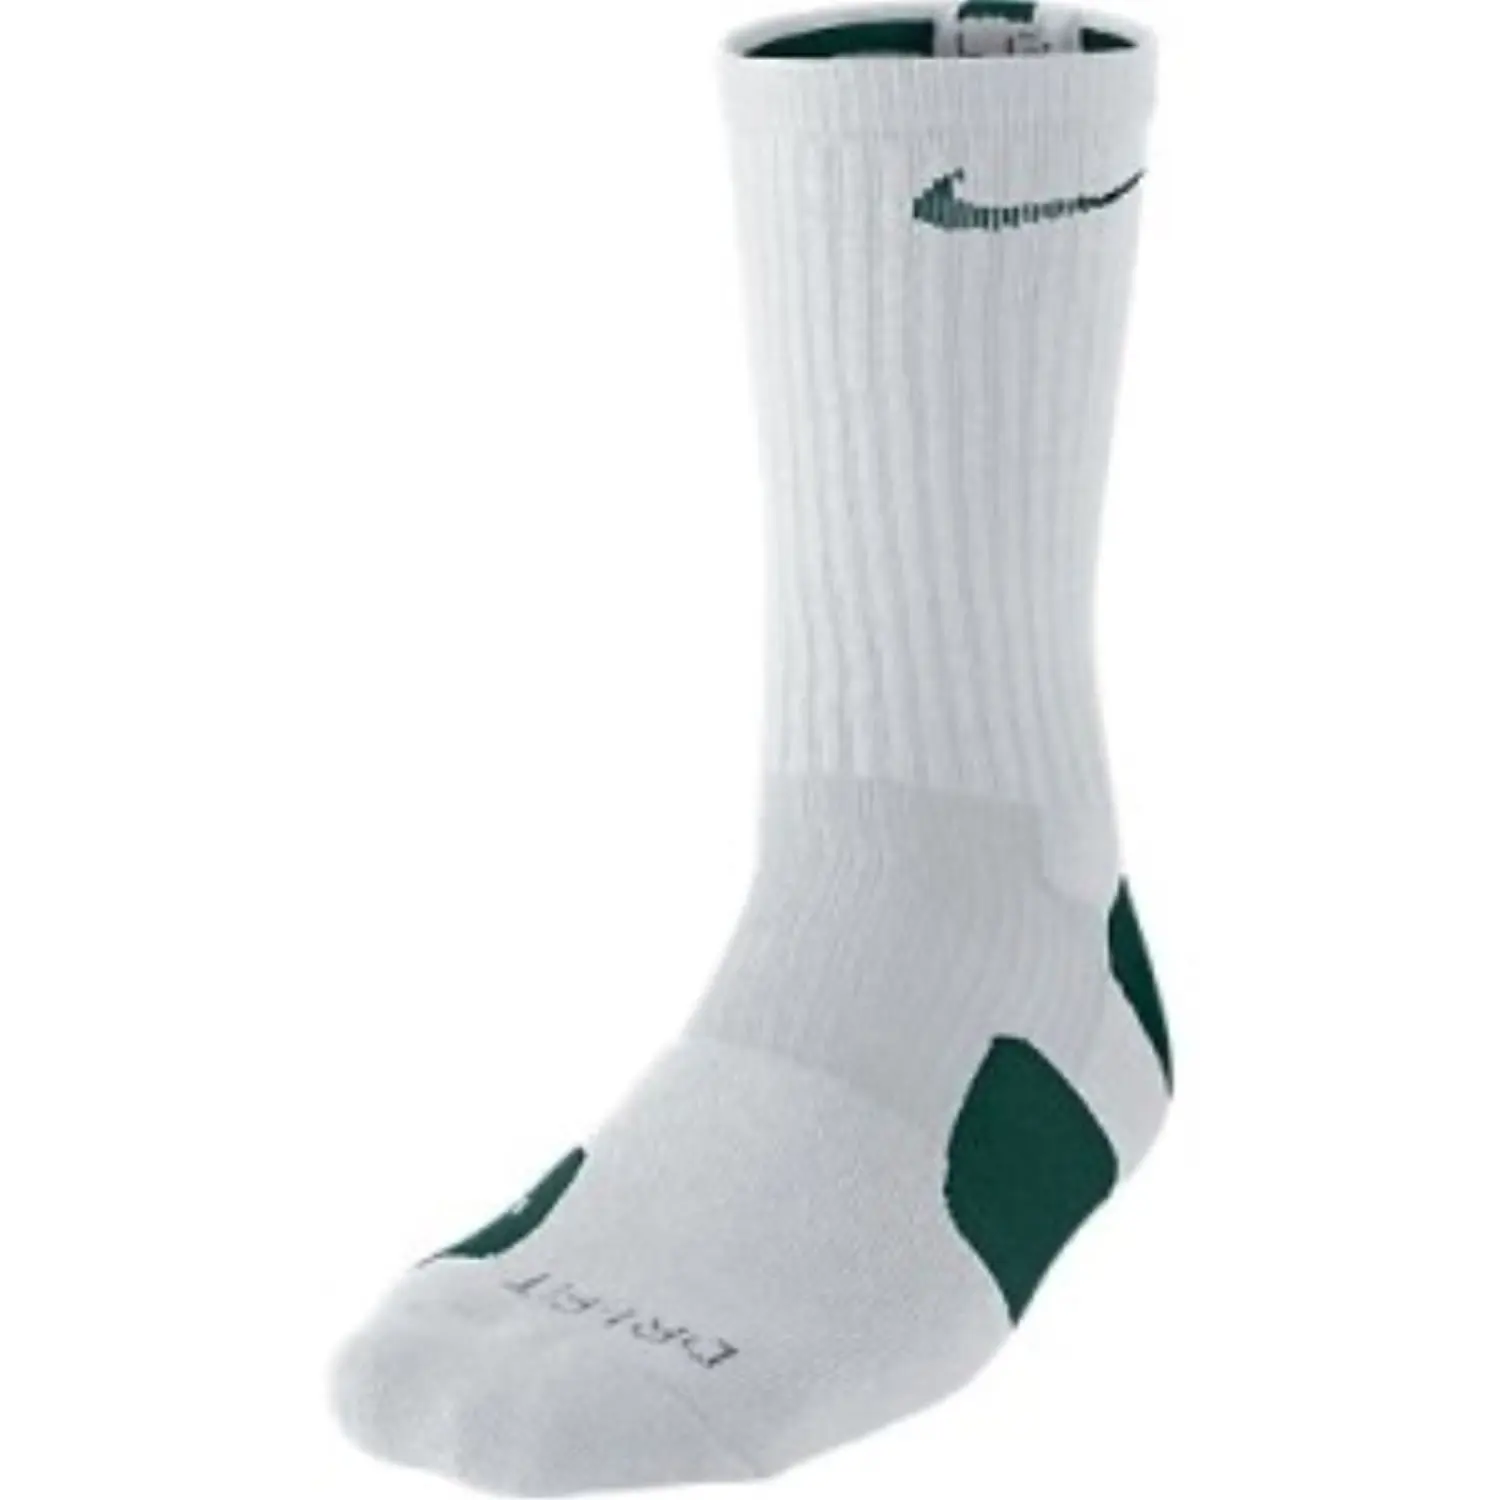 green and white nike socks